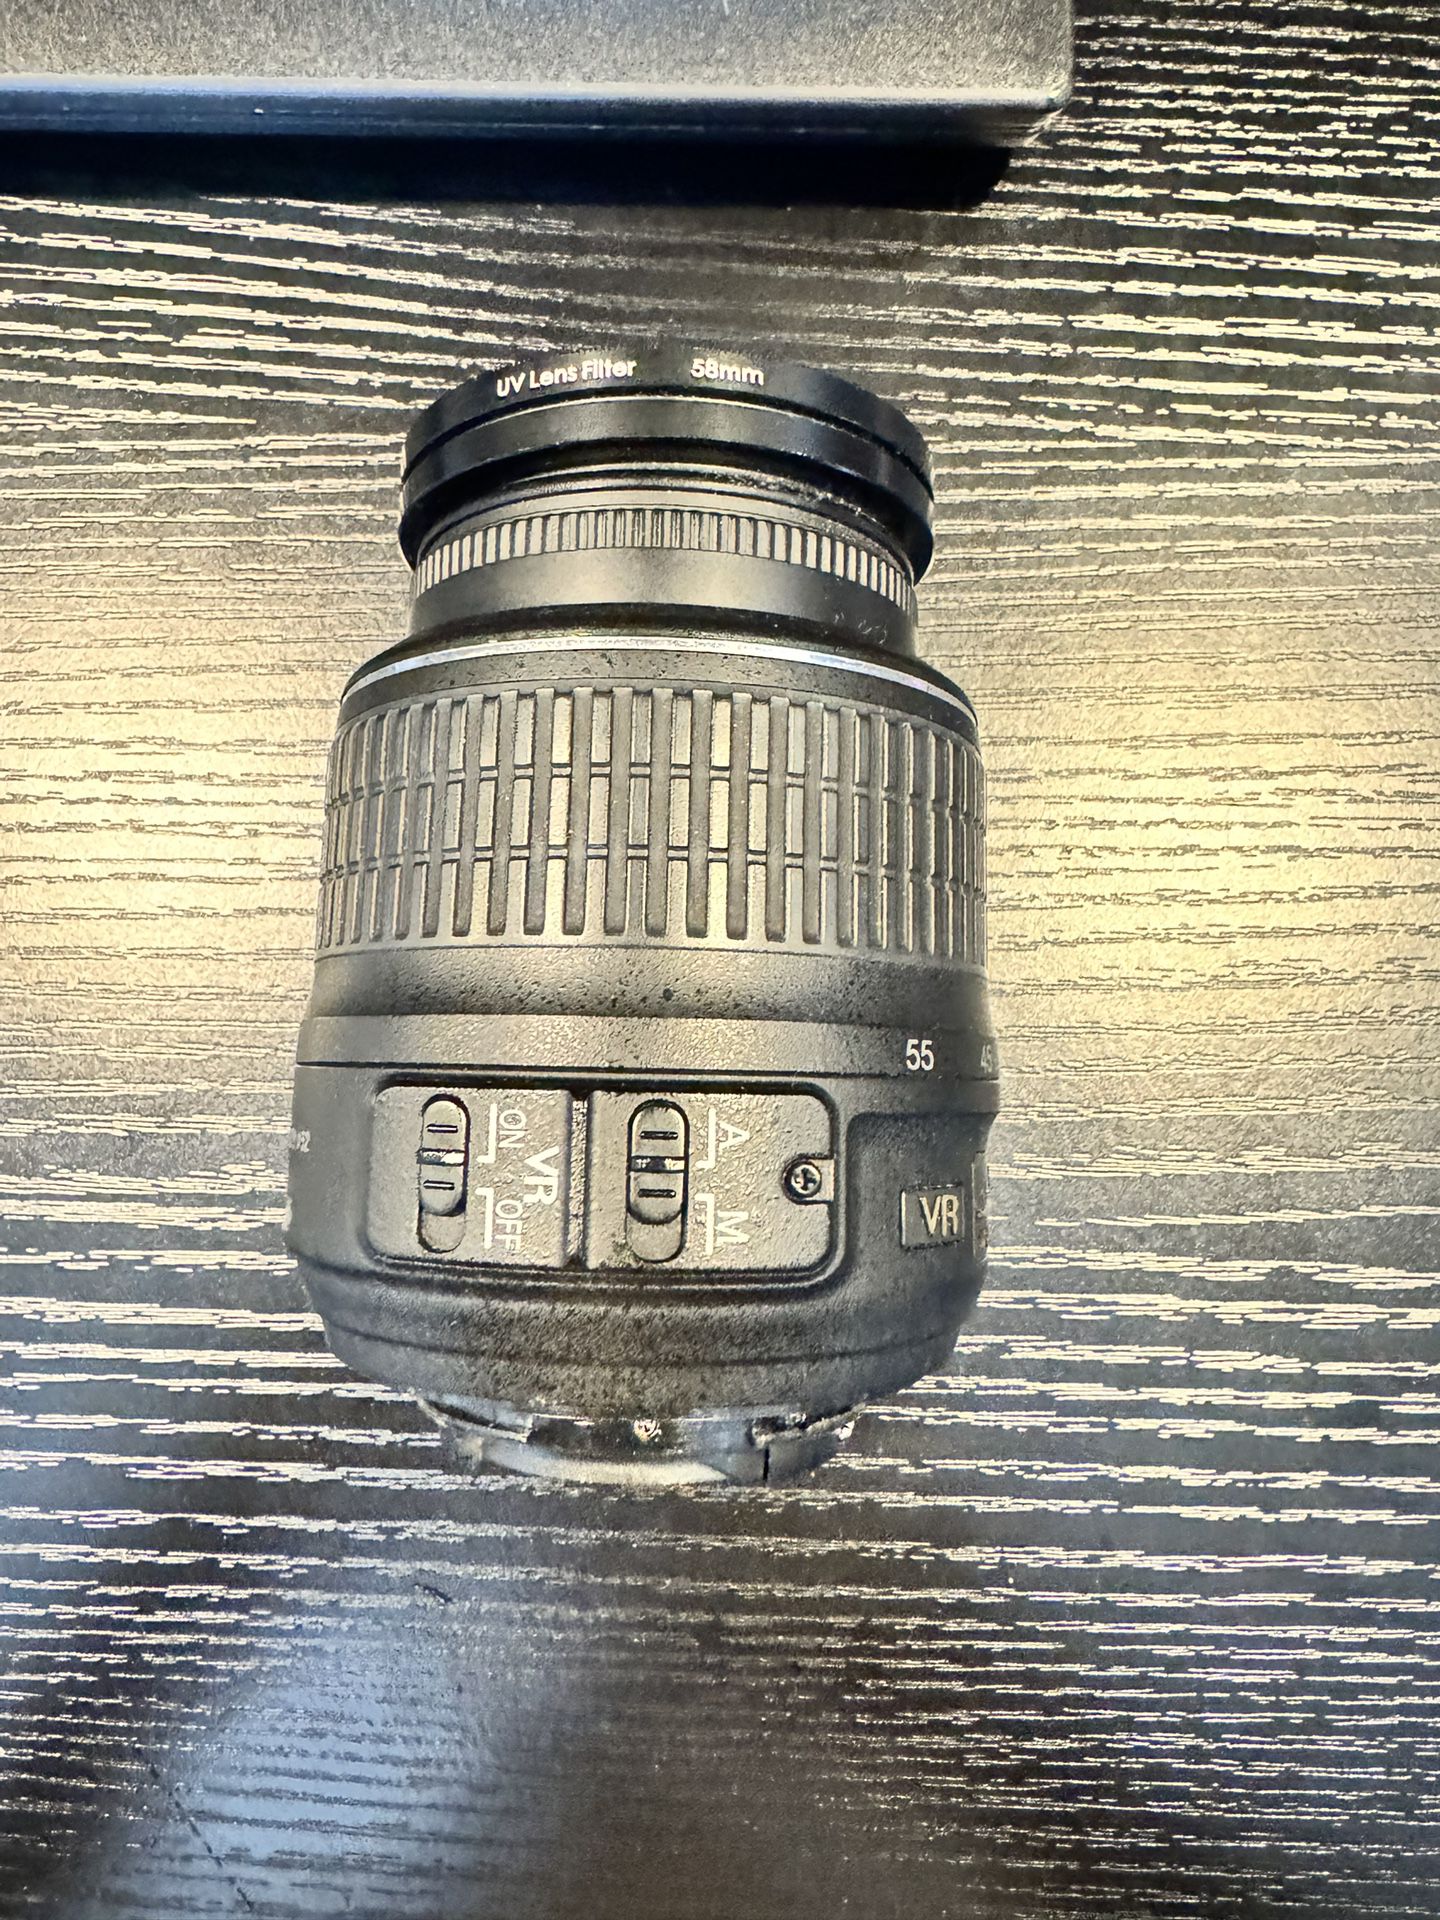 Nikon 18-55mm